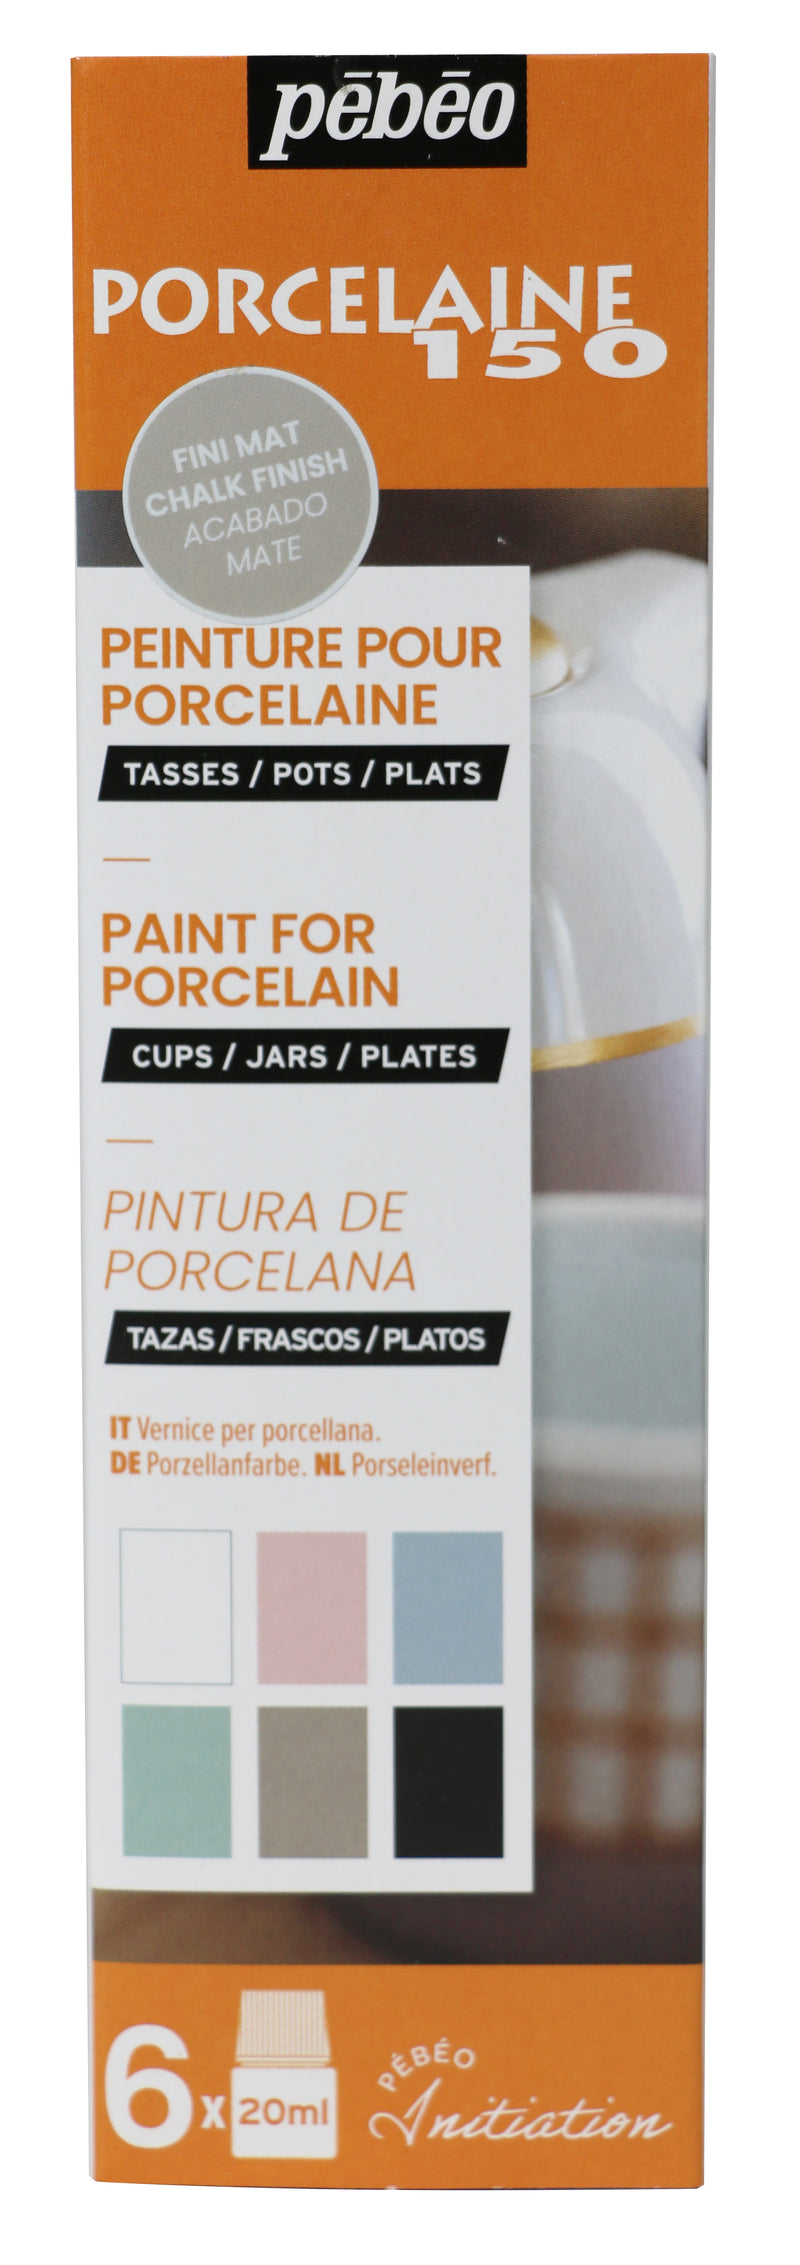 Pebeo Porcelaine 150 Paints 20ml Chalk Set Of 6